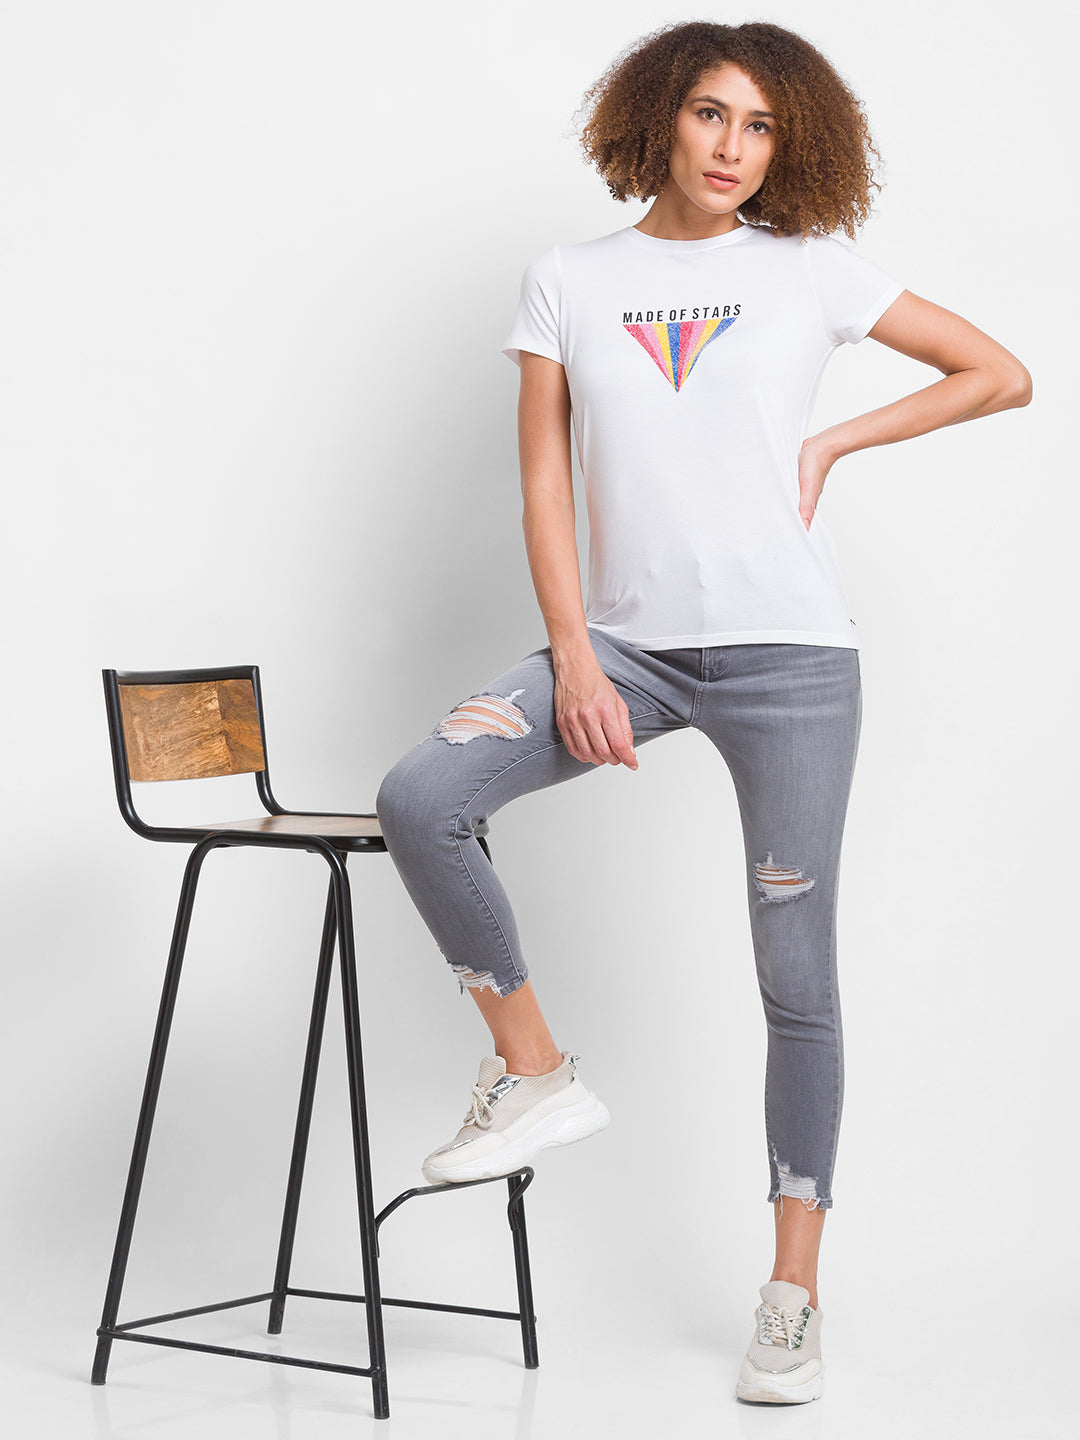 Spykar Light Grey Lycra Super Skinny Ankle Length Jeans For Women (Alexa)